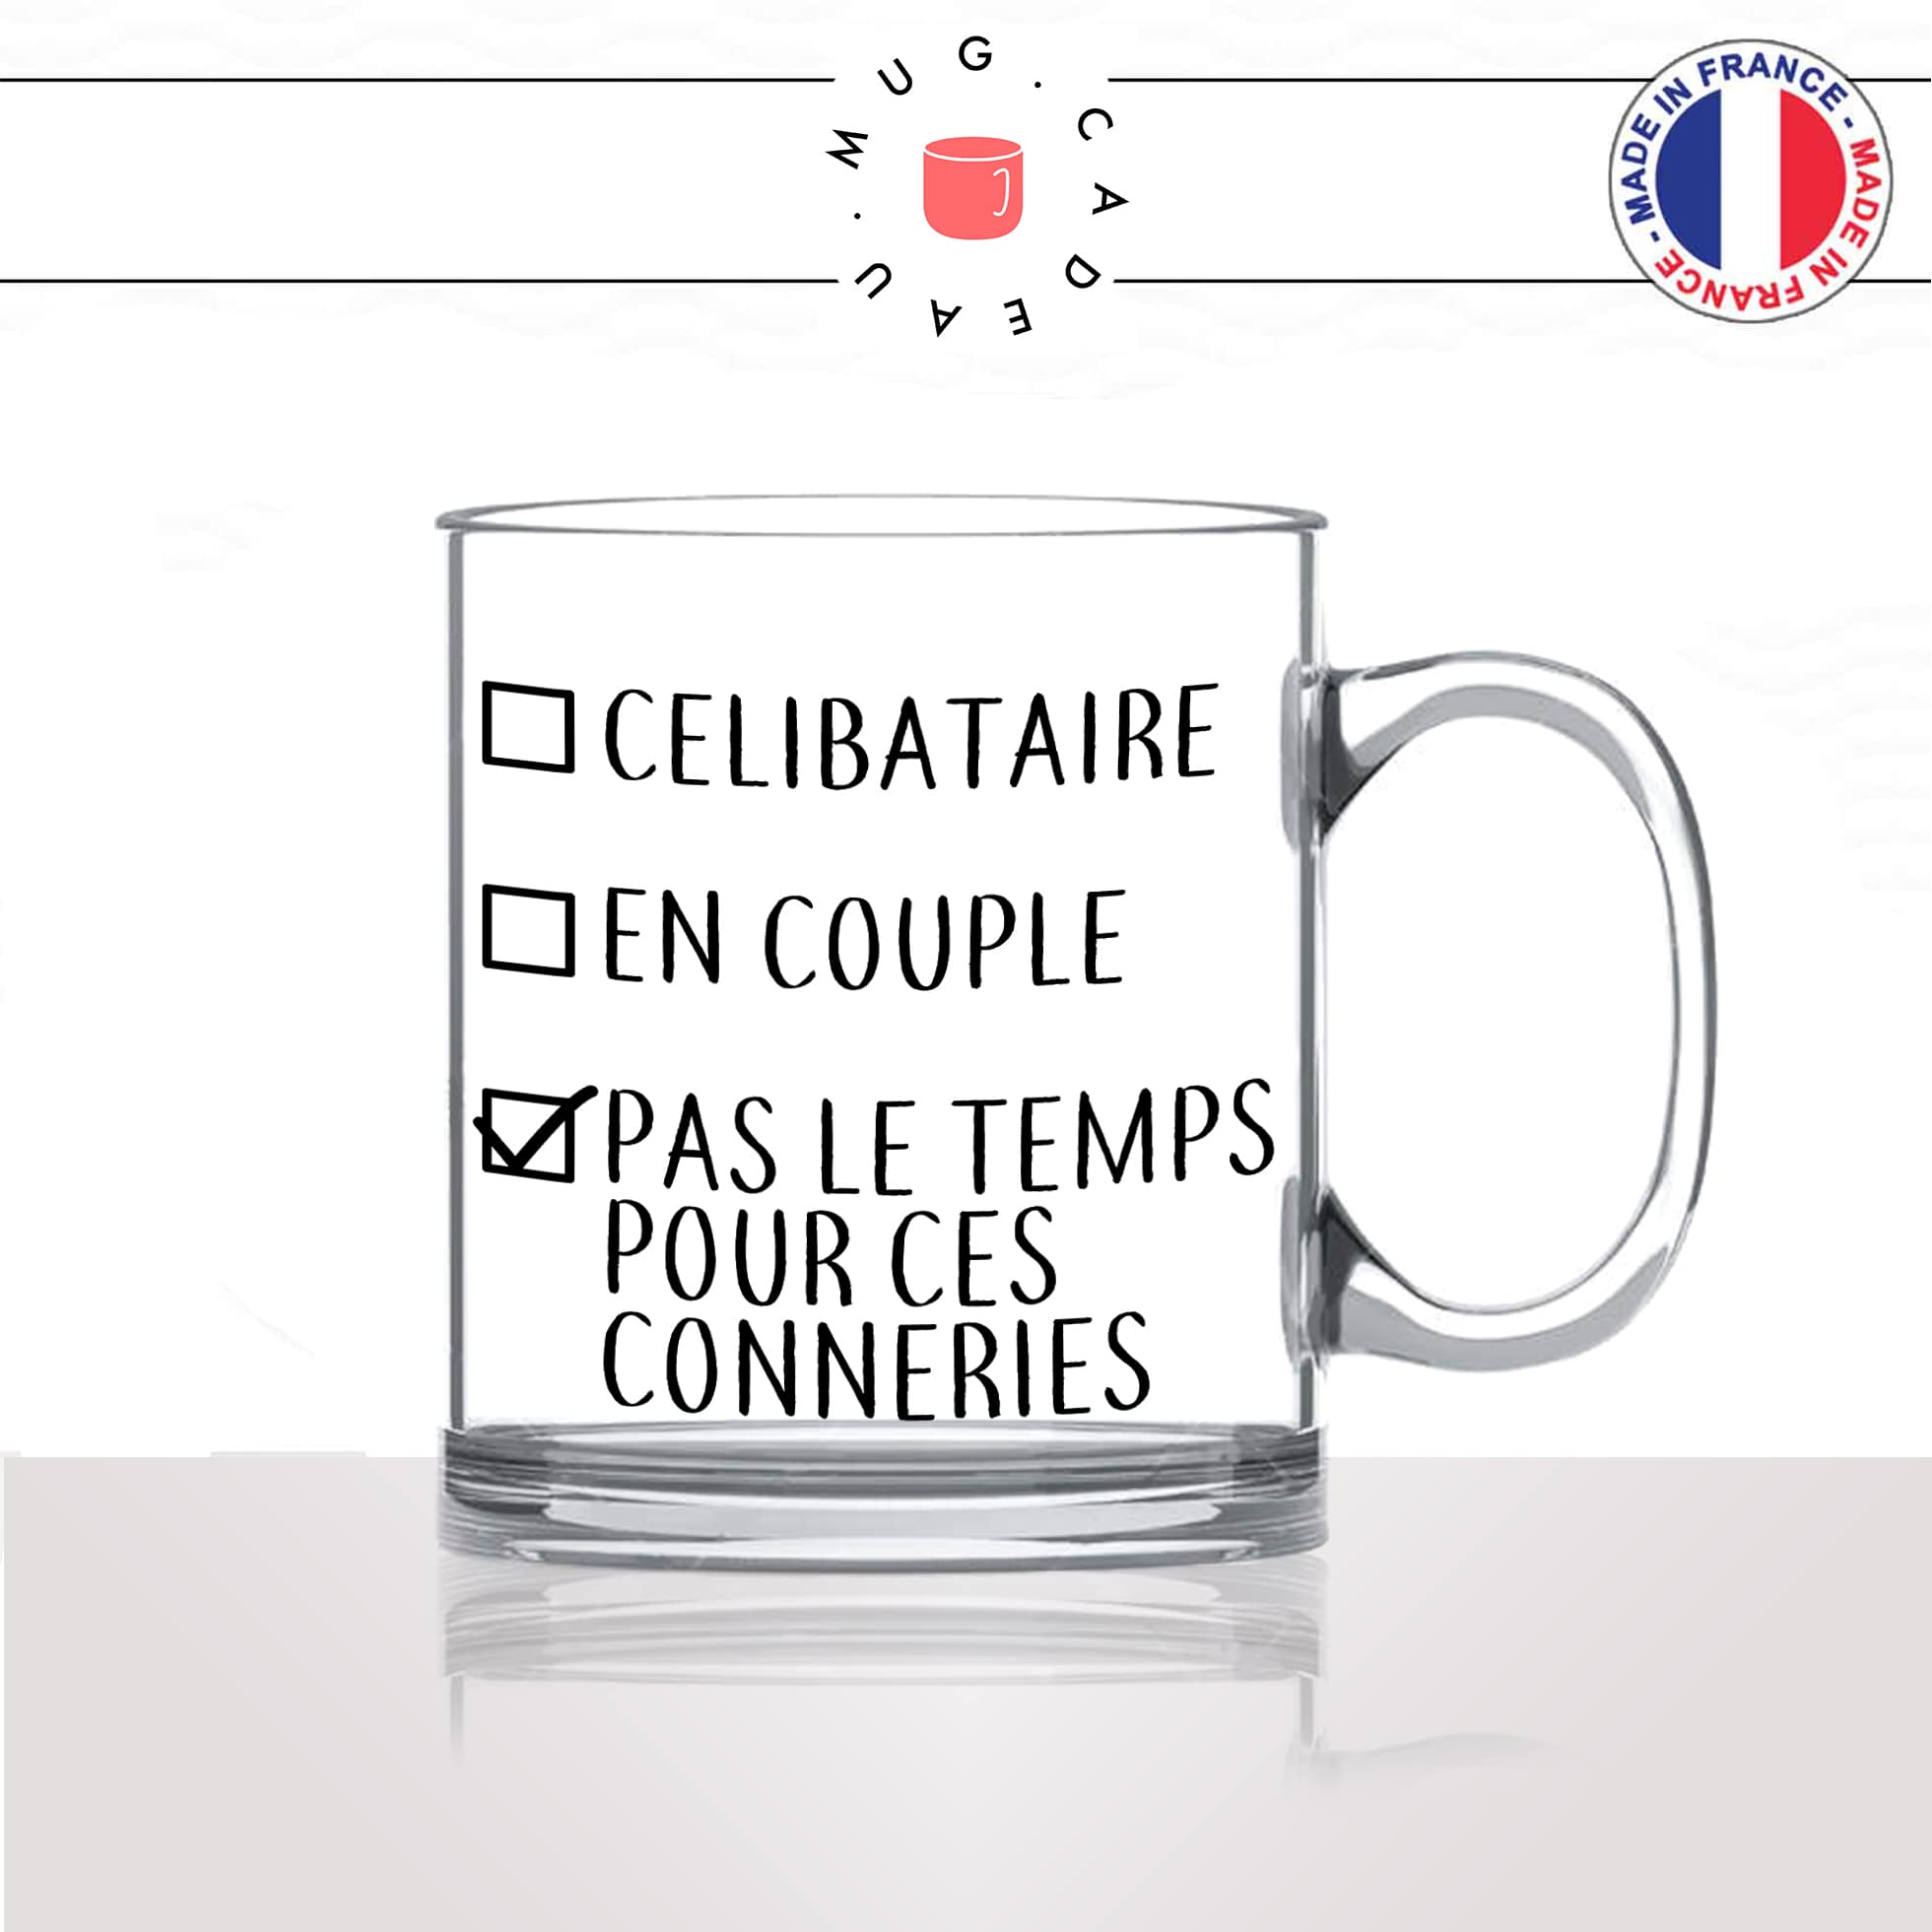 mug-tasse-en-verre-transparent-glass-célibataire-en-couple-pas-le-temps-pour-ces-conneries-homme-femme-humour-cool-idée-cadeau-fun-drole-café-thé2-min